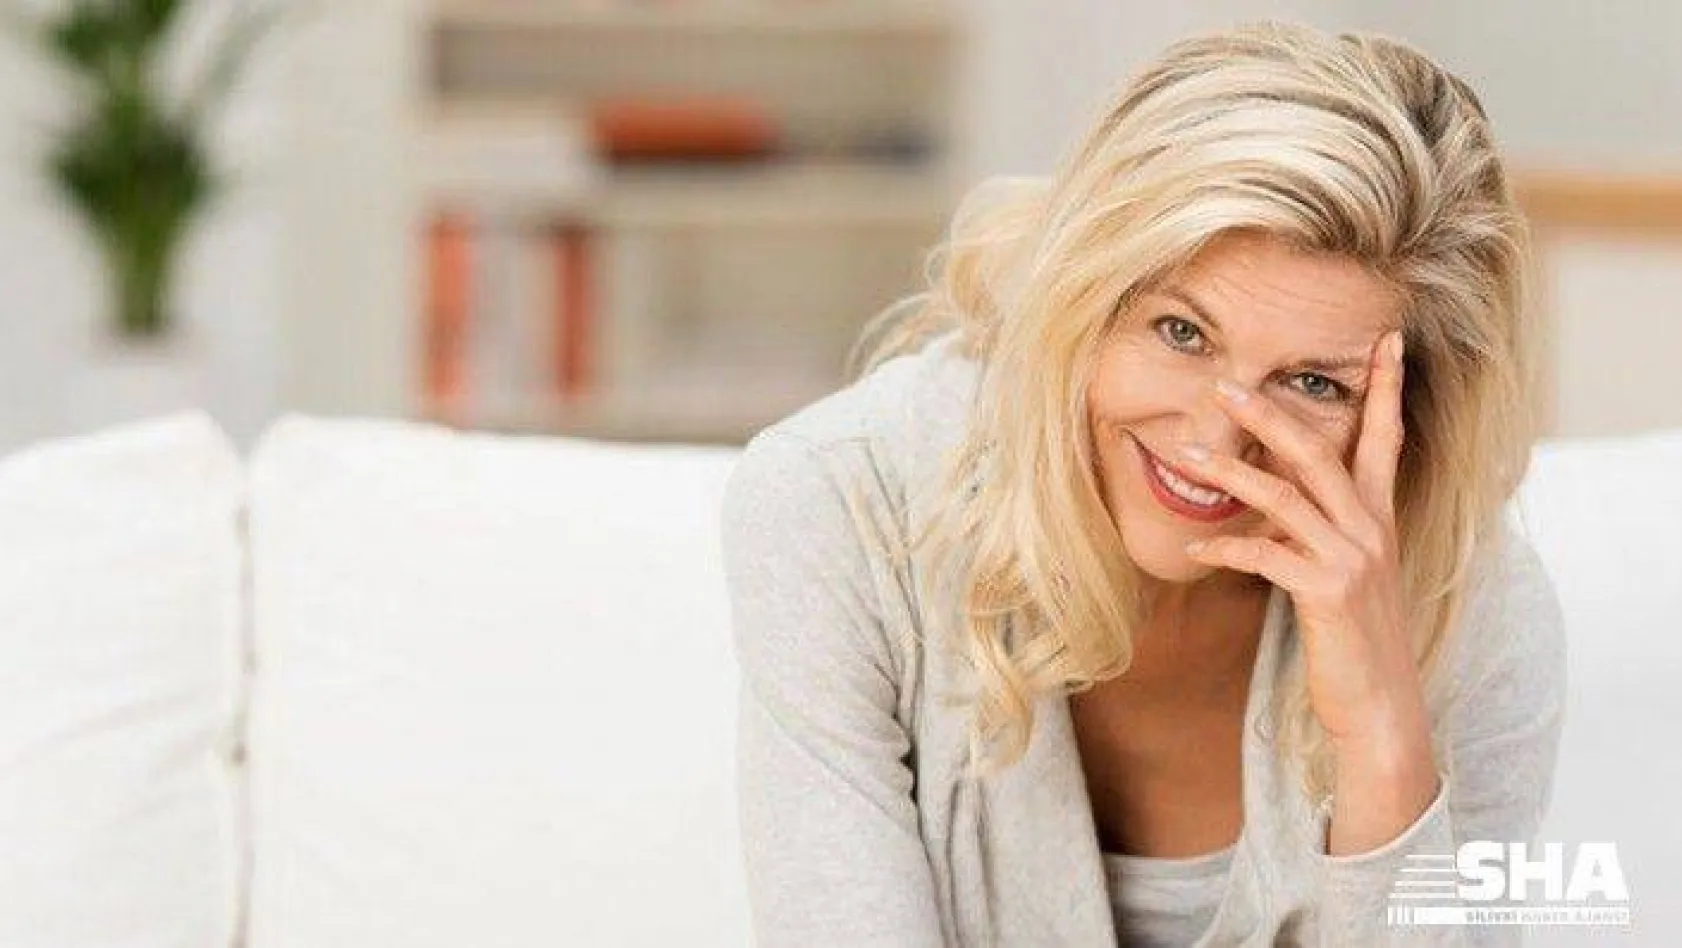 Kadınların hayatında önemli &quotdönüm noktası" olan menopoz!